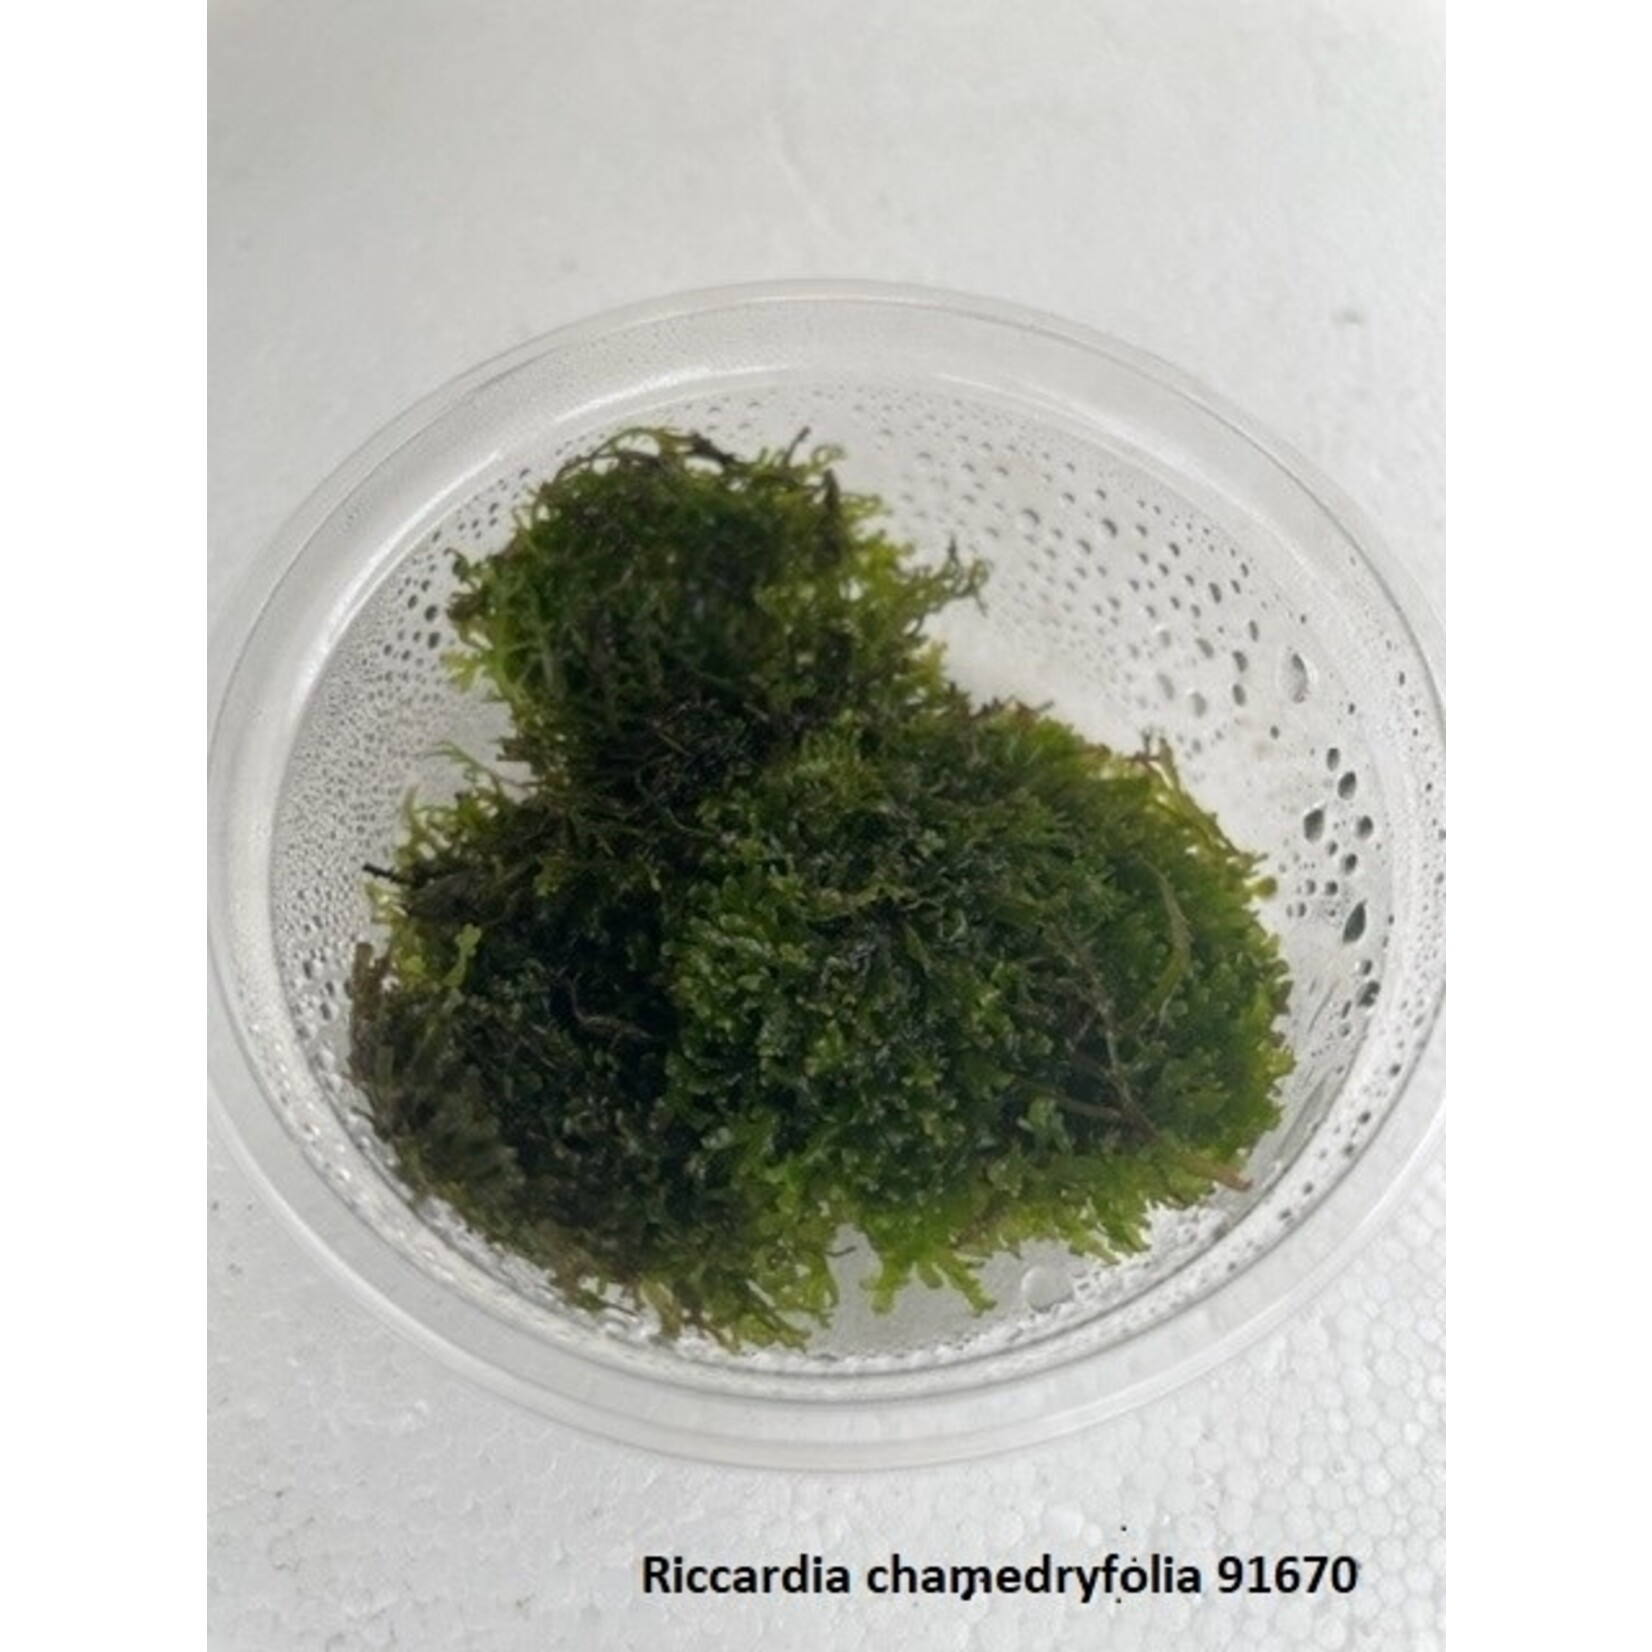 Riccardia chamedryfolia (Cup 80 cc)